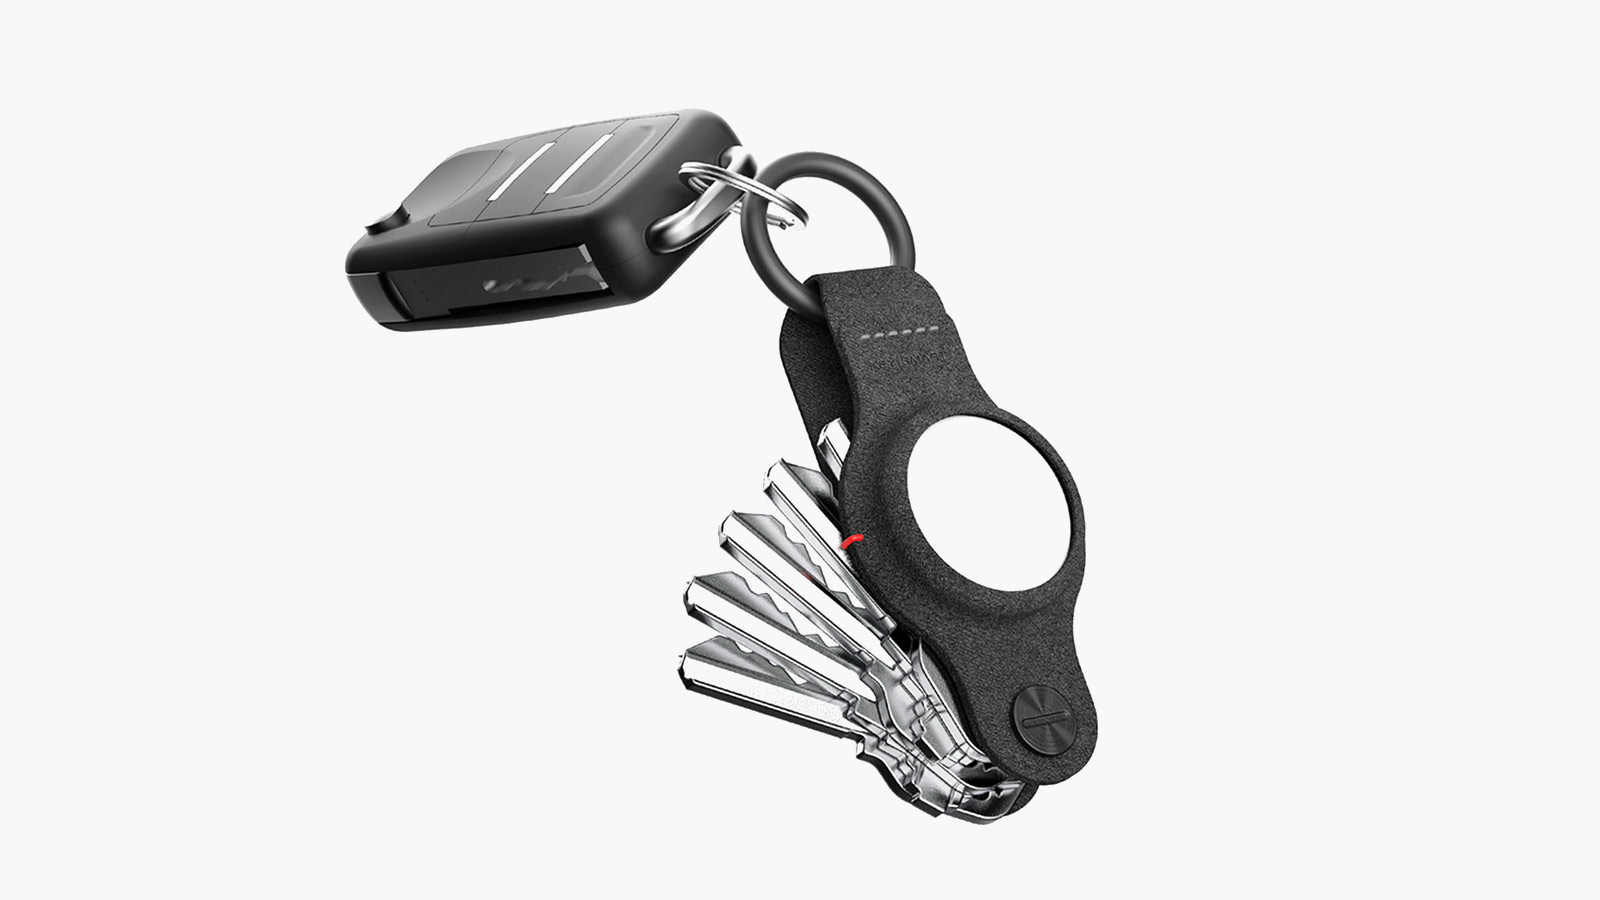 KeySmart's Leather Key Organizer Is an Elegant Accessory for Your Keys